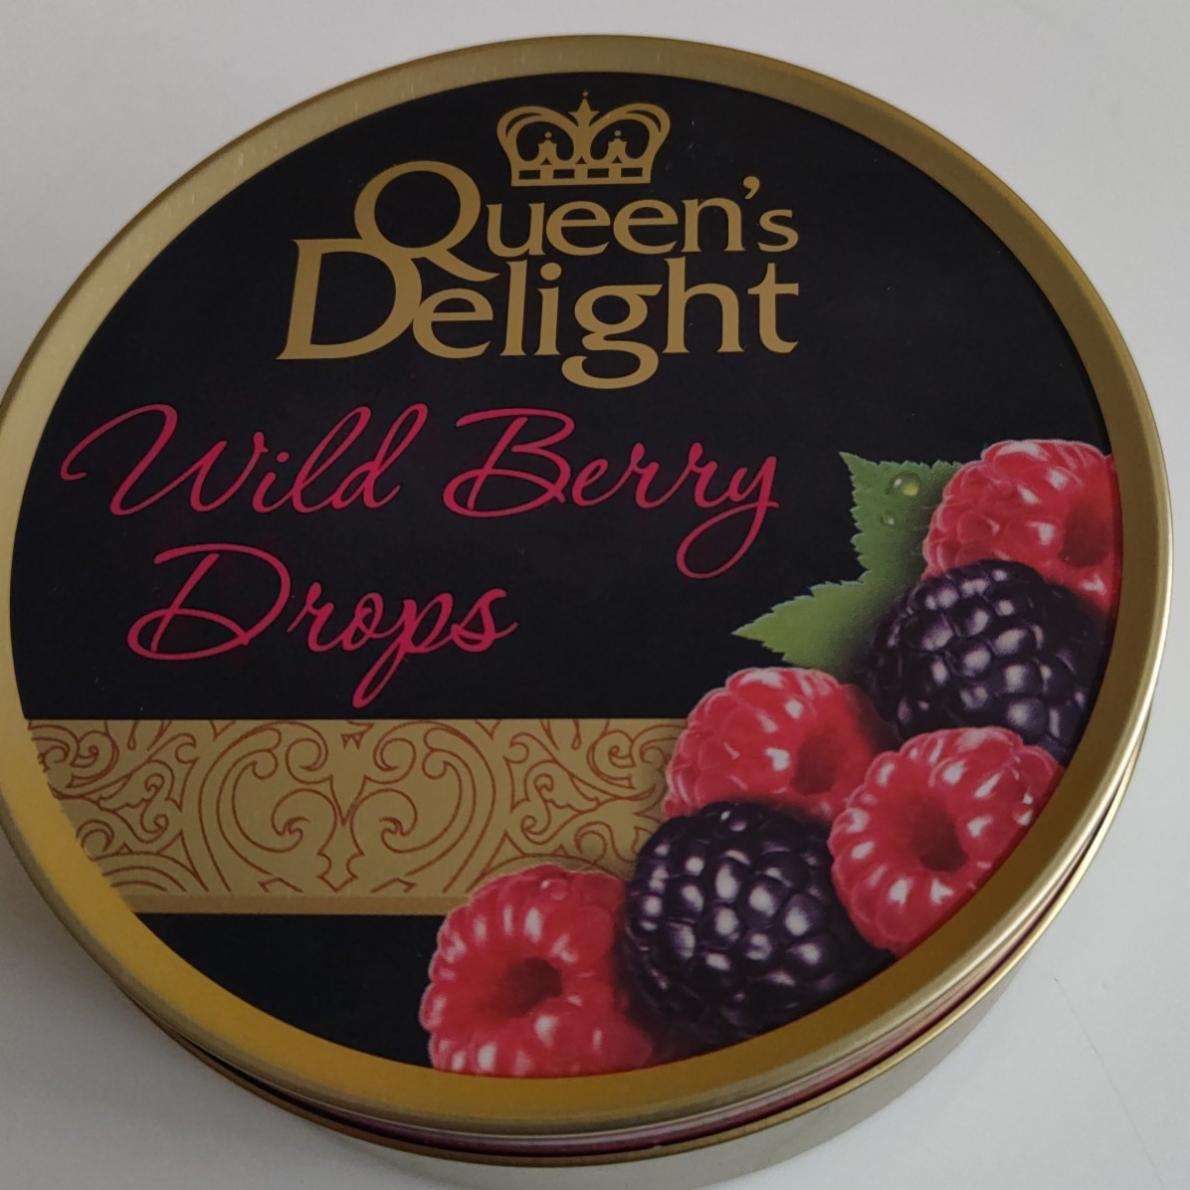 Fotografie - Wild Berry Drops Queen's Delight